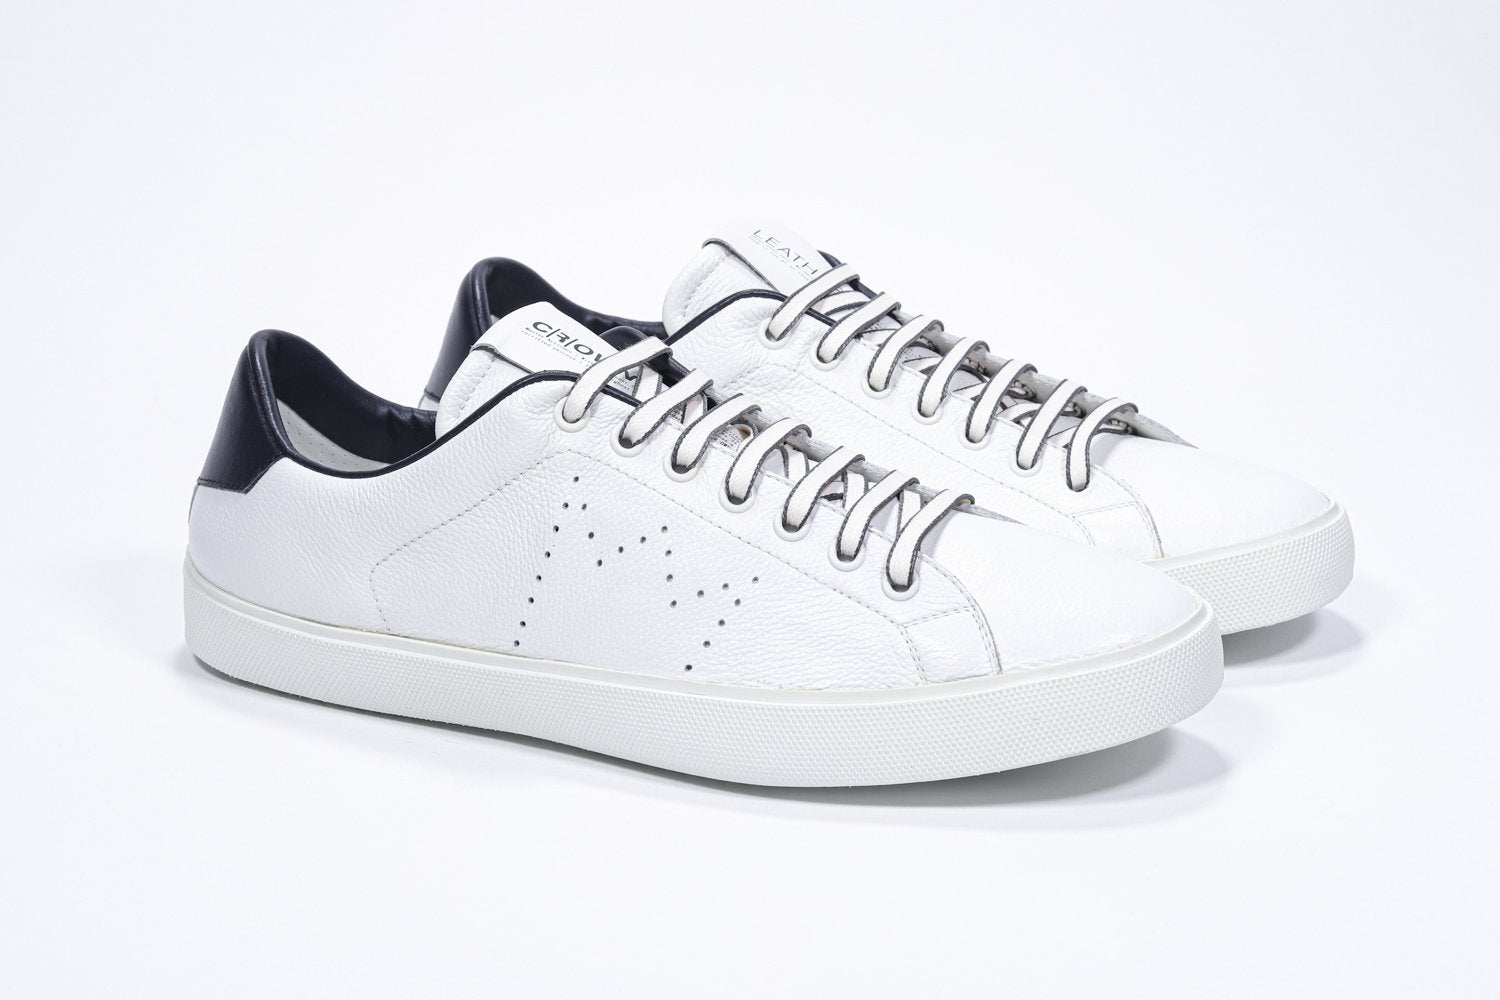 Vue de trois quarts de l'avant de la chaussure blanche sneaker avec des détails en bleu marine et le logo perforé de la couronne sur l'empeigne. Tige en cuir et semelle en caoutchouc blanc.